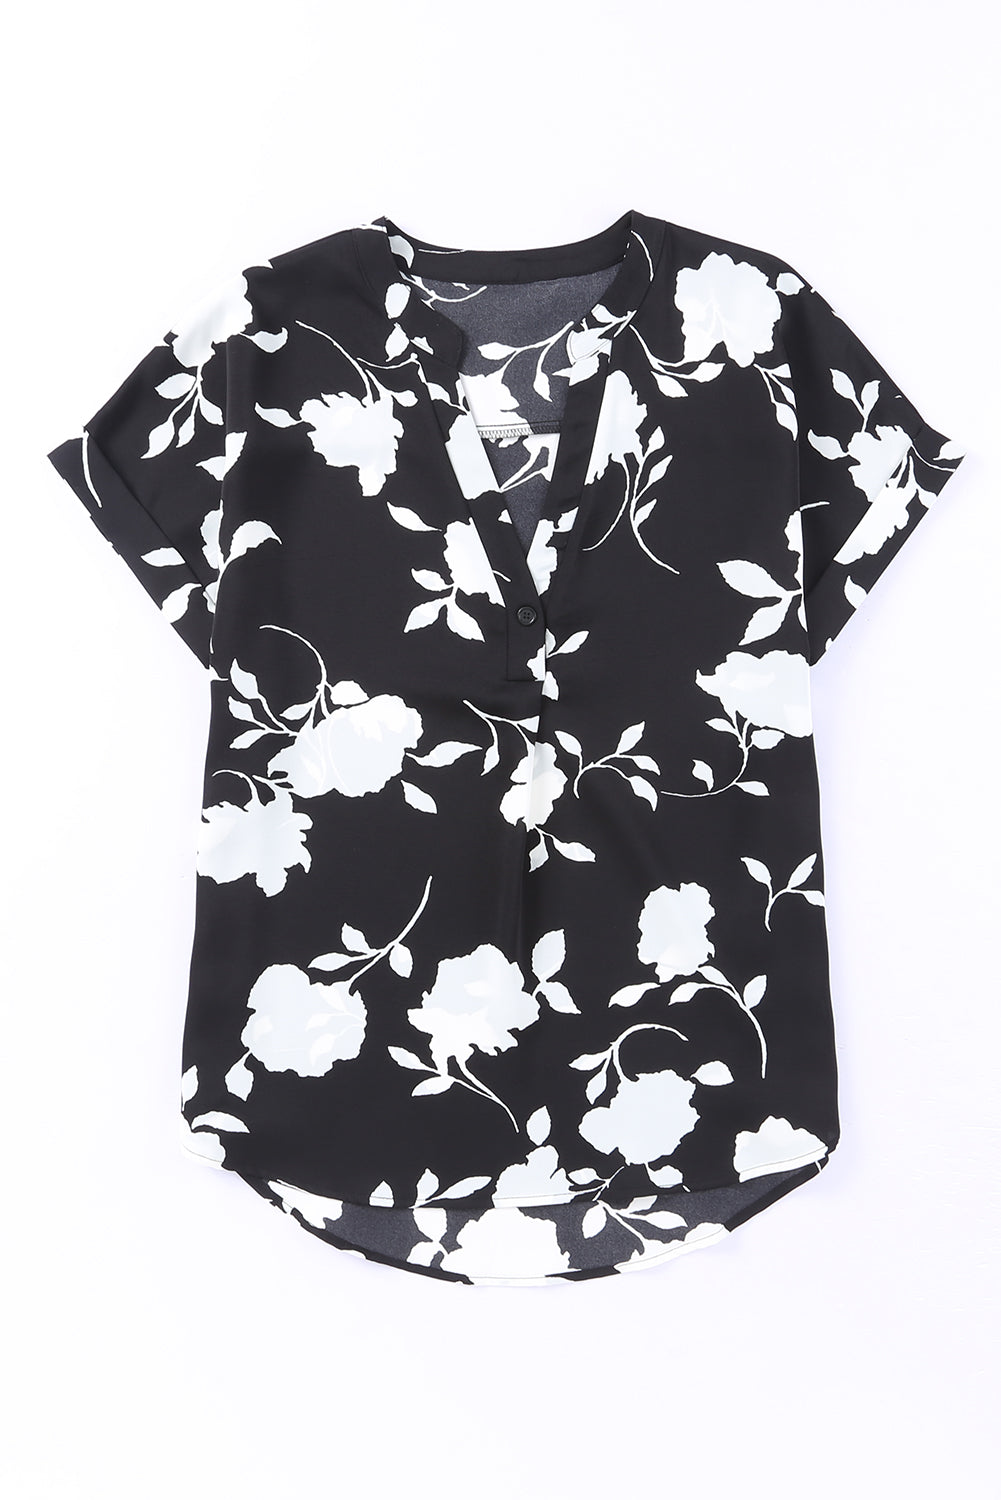 Crna bluza kratkih rukava s cvjetnim uzorkom